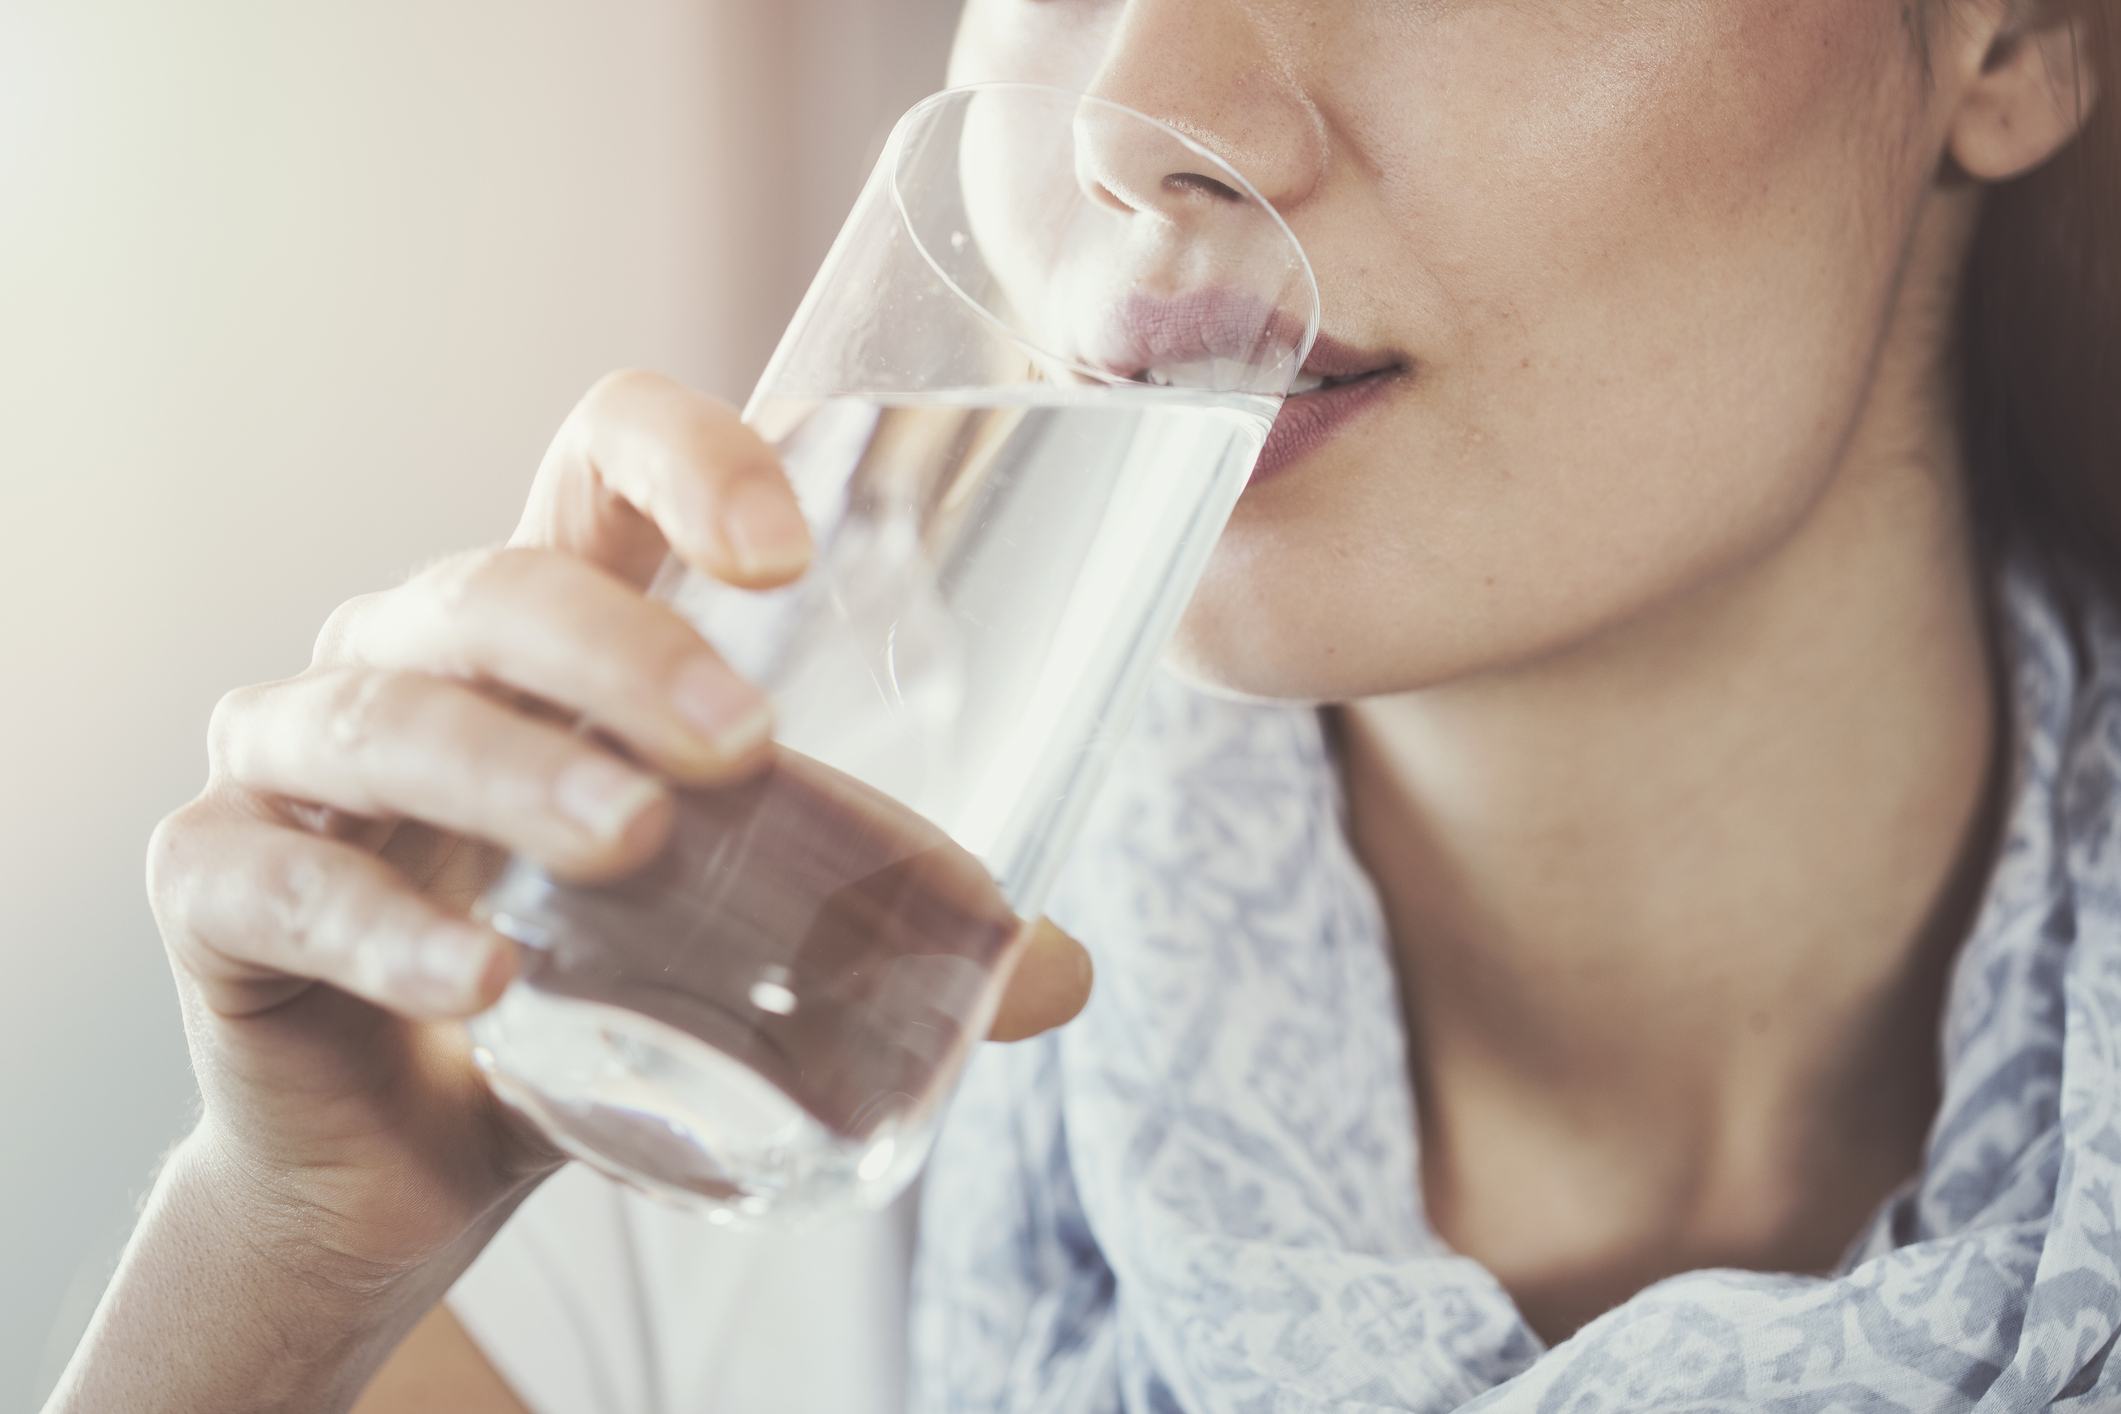 Друго правило е да пиете вода преди хранене.<br />
Счита се за добра практика да се пие по малко вода преди всяко хранене, тъй като това помага да не се чувствате толкова гладни, което, от своя страна, ви предпазва от преяждане. Пиенето на чаша вода около половин час преди хранене също е добър метод за подпомагане на храносмилането.